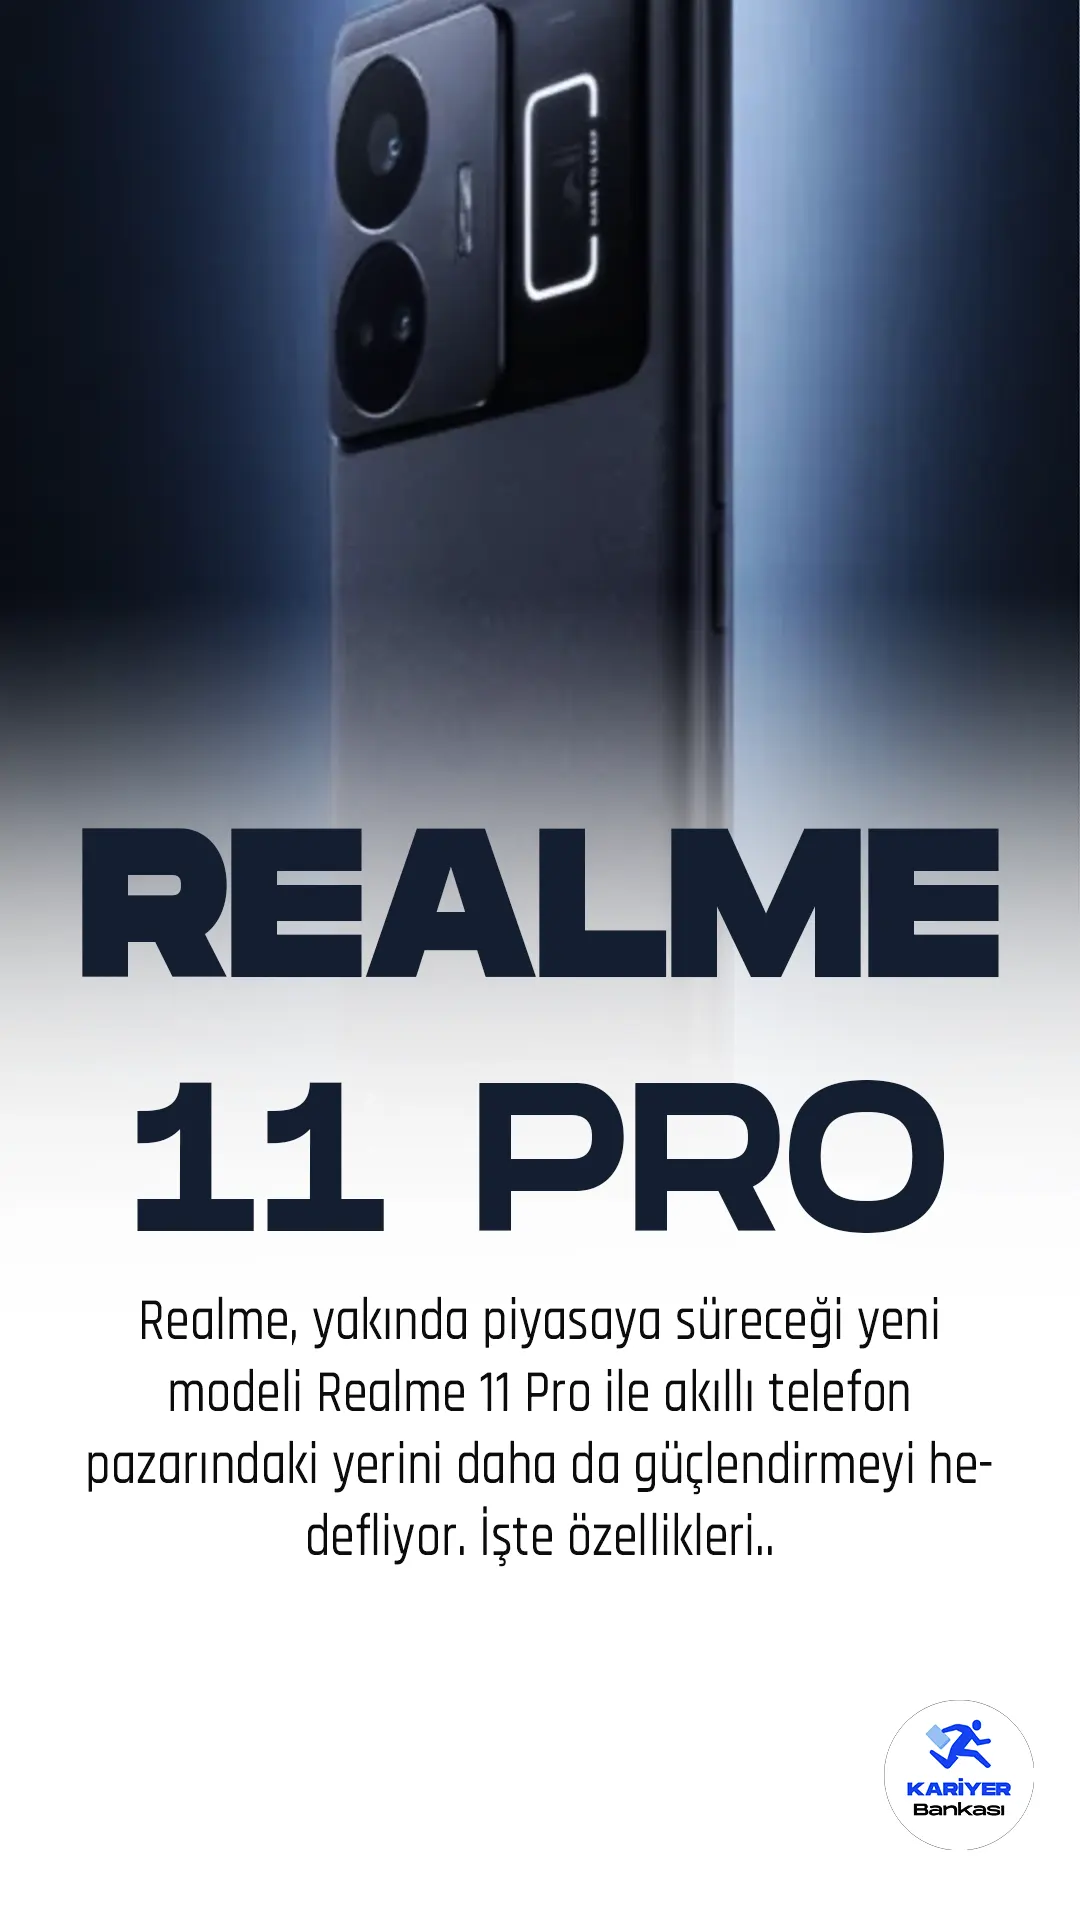 Realme, yakında piyasaya süreceği yeni modeli Realme 11 Pro ile akıllı telefon pazarındaki yerini daha da güçlendirmeyi hedefliyor. Bluetooth SIG sertifikasyon veri tabanında daha önce listelenen ve şimdi de TENAA'da görüntülenen Realme 11 Pro, yenilikçi tasarımı ve geliştirilmiş özellikleriyle dikkat çekiyor.